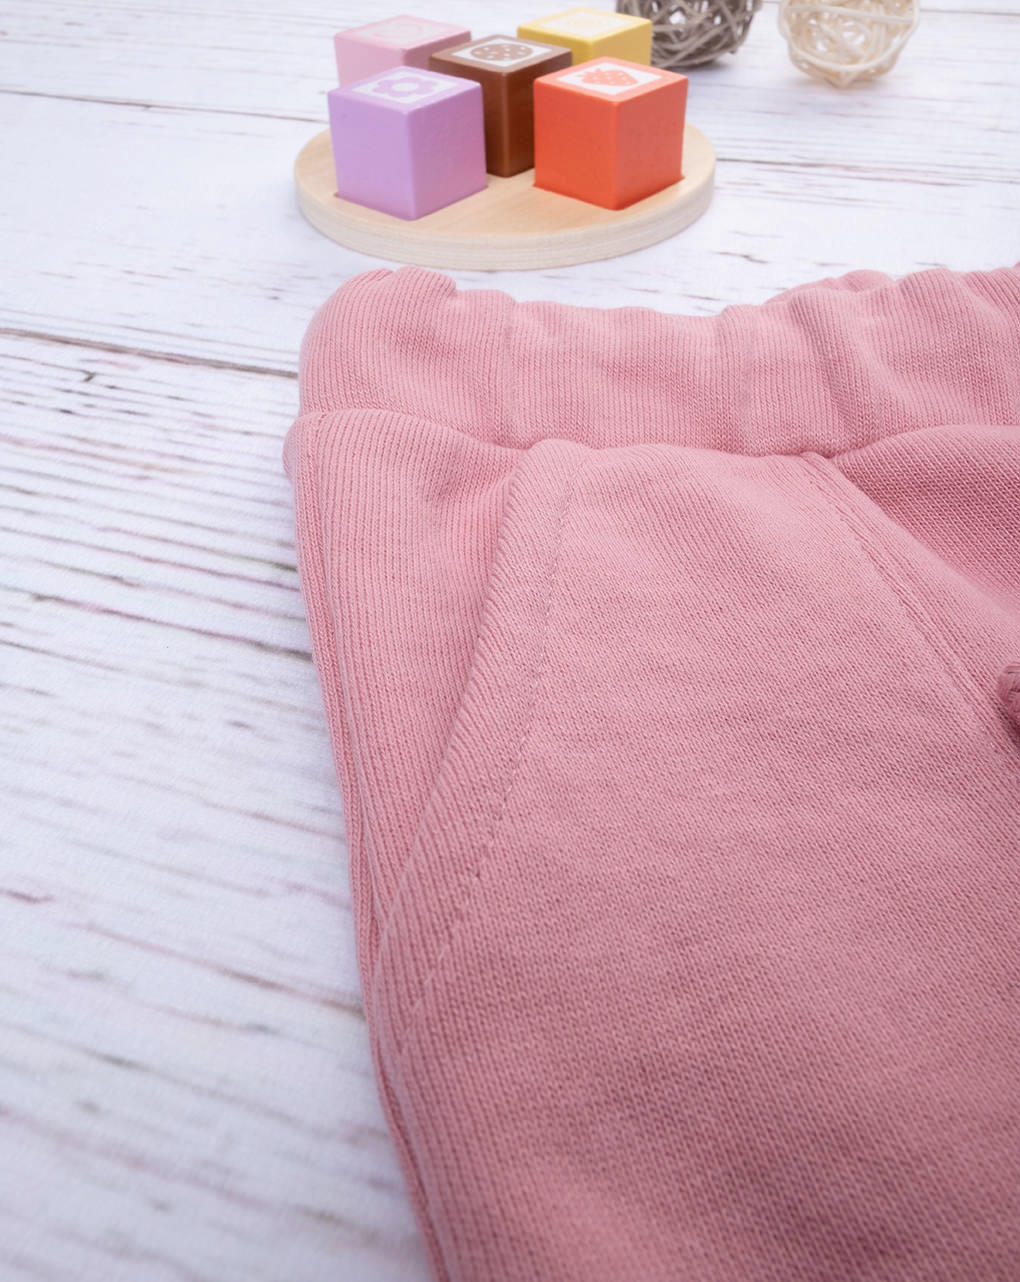 Pantalón de chándal de niña rosa - Prénatal